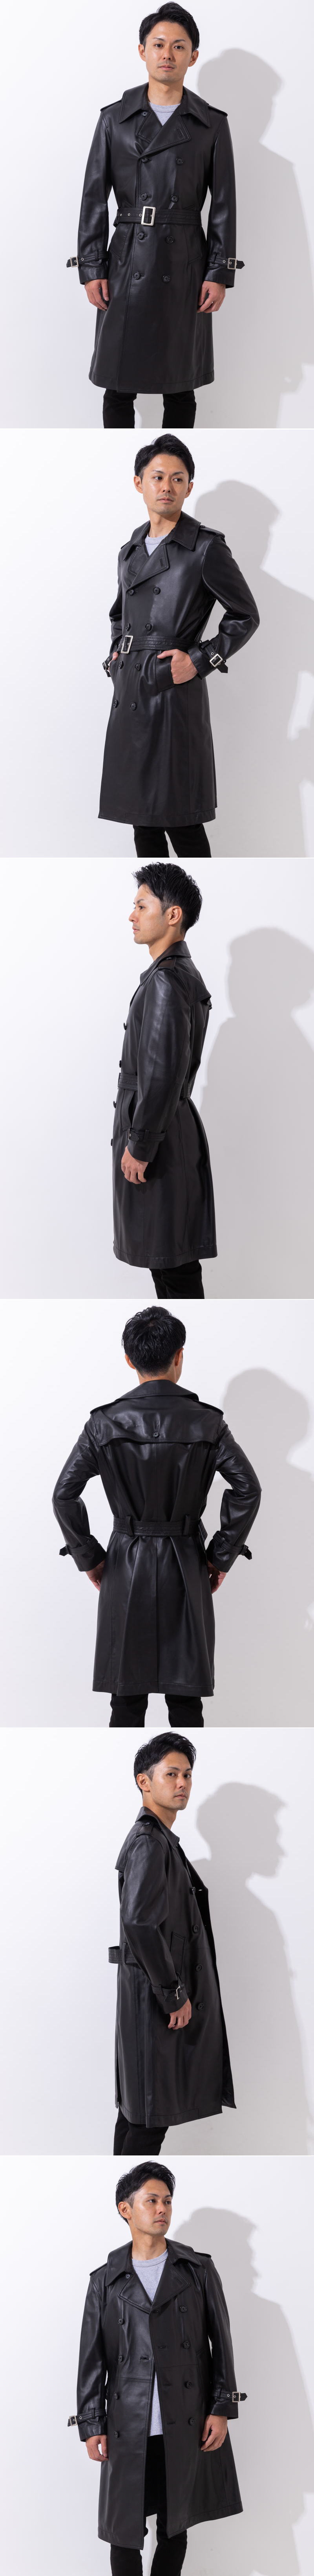 羊革のレザーコート 革マント ダブル 大きめサイズ  袖折り返し革  Fブラック